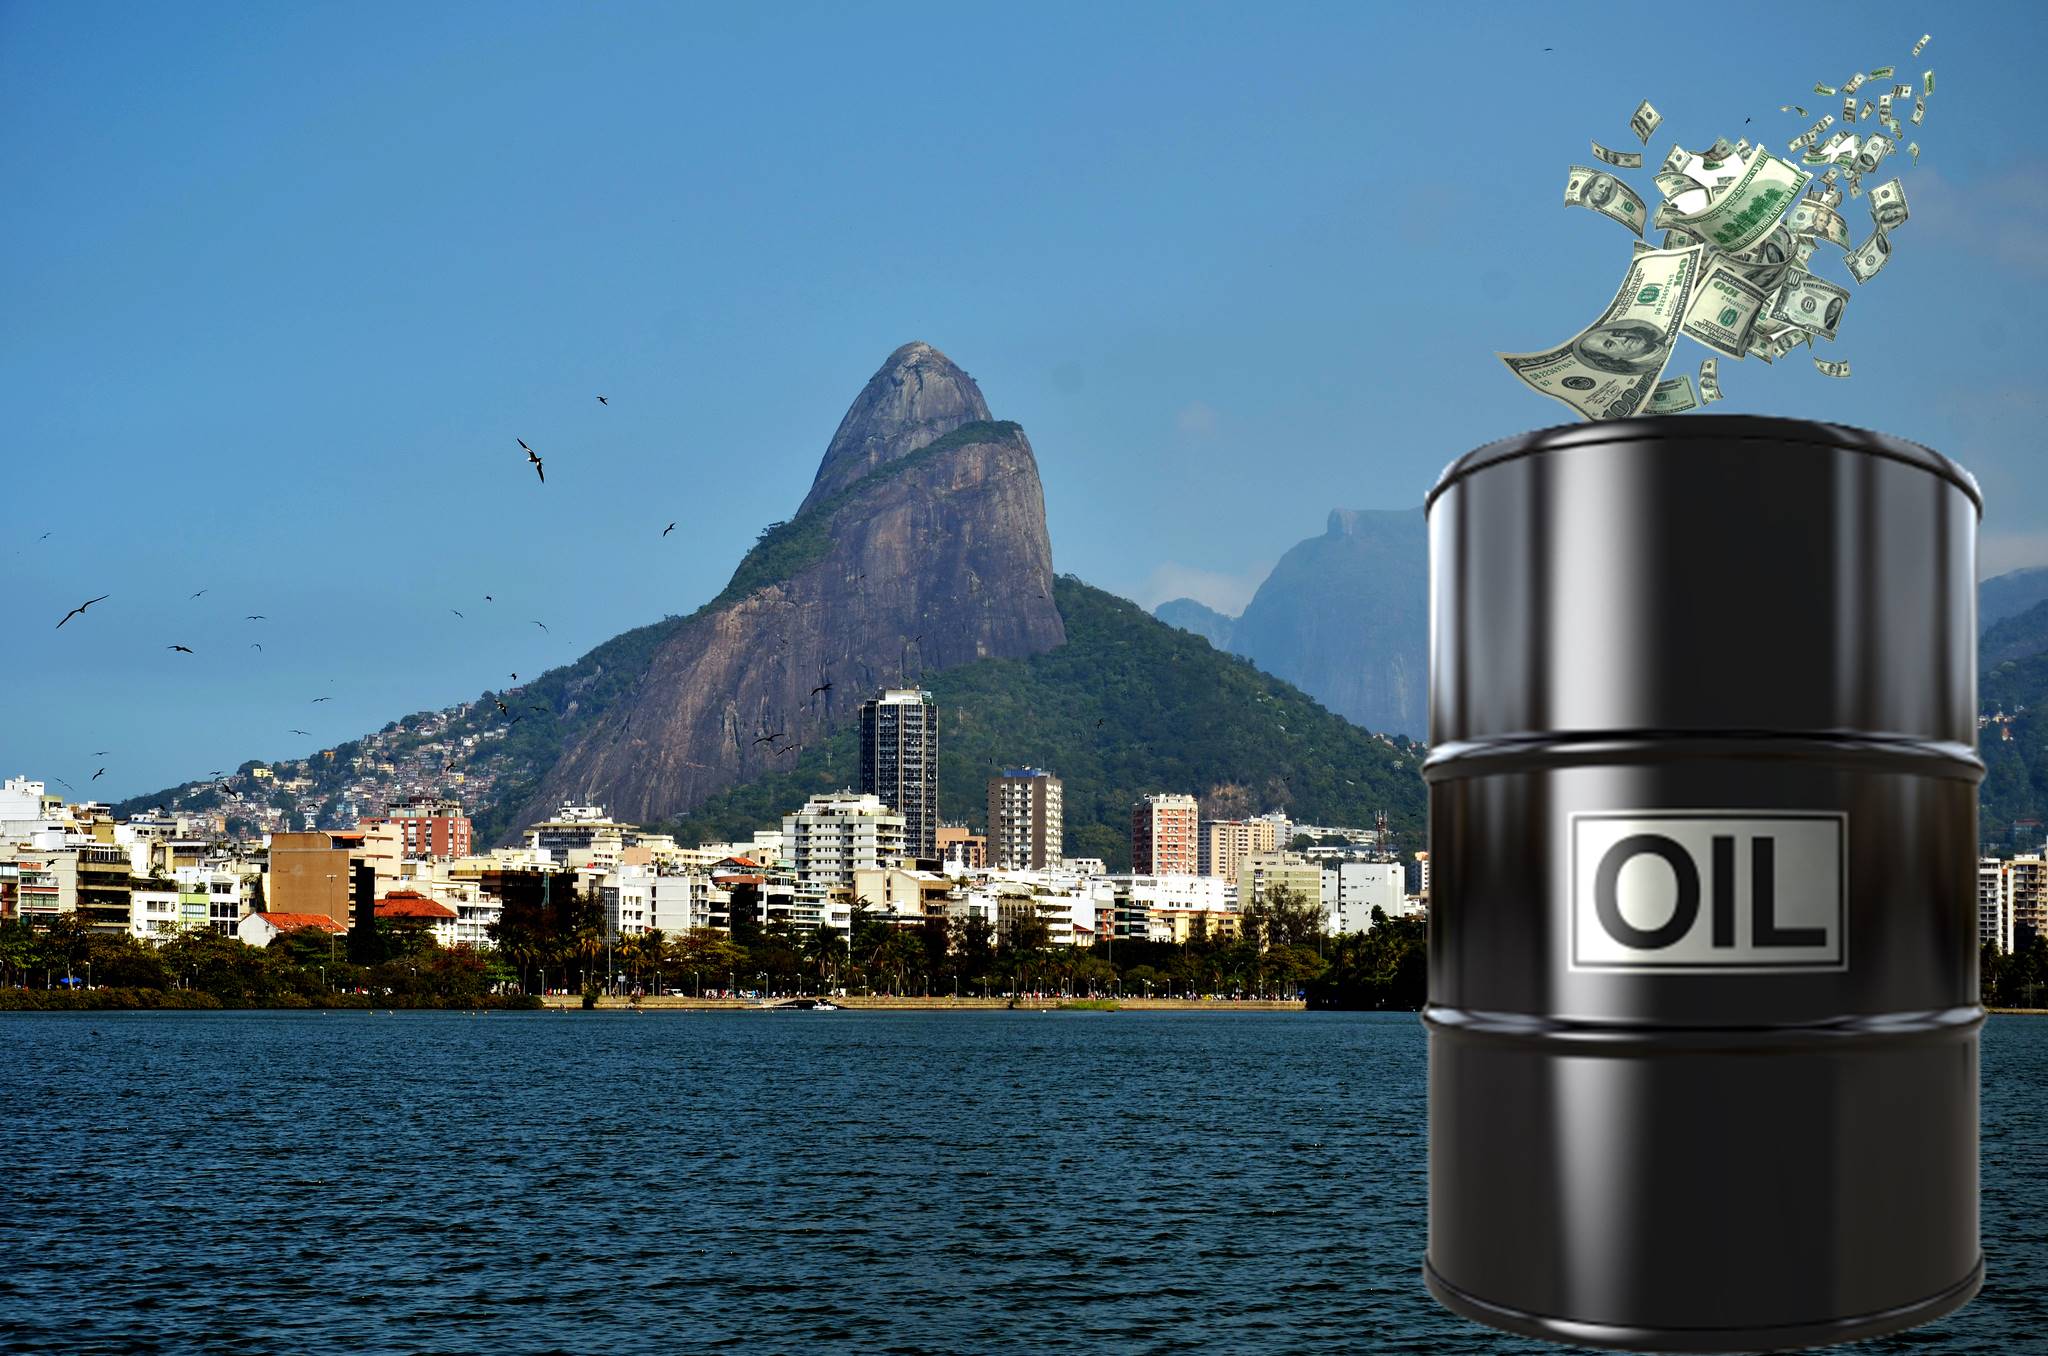 Lucros da Petrobras rende a Macaé R$ 62,30 milhões em royalties de petróleo neste mês de fevereiro